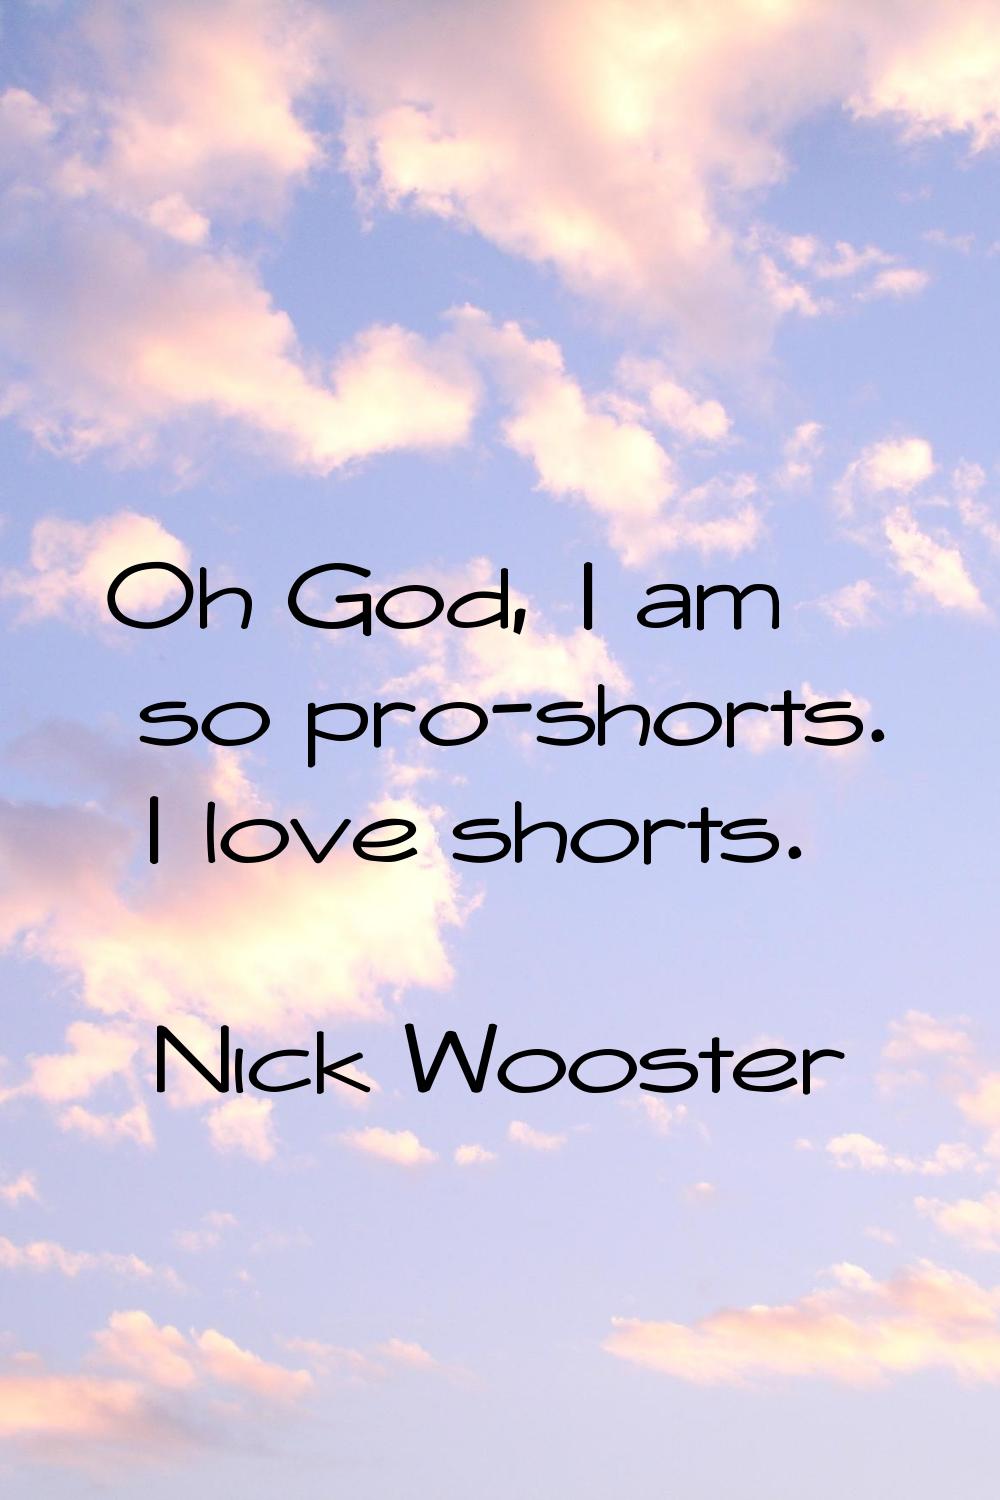 Oh God, I am so pro-shorts. I love shorts.